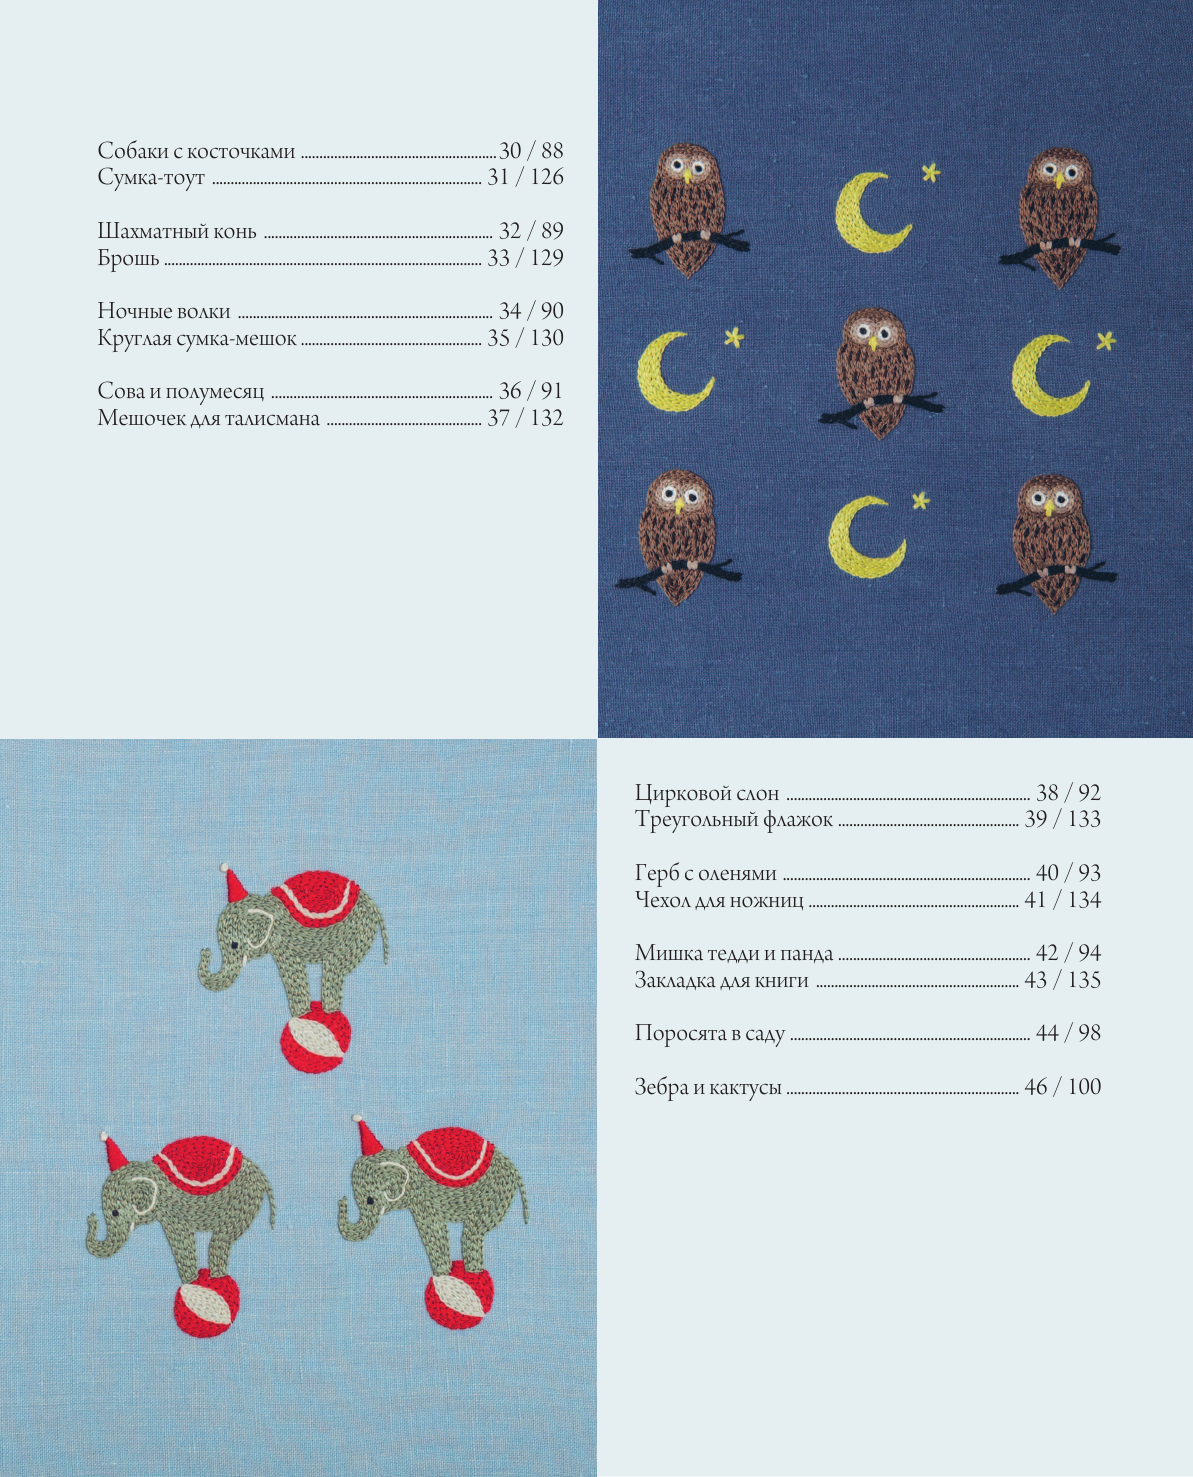 Вышивка Юмико Хигучи Анималистическая коллекция Простые и эффектные дизайны вышивки нитью мулине по льняной ткани 25 сюжетов с животными - фото №7